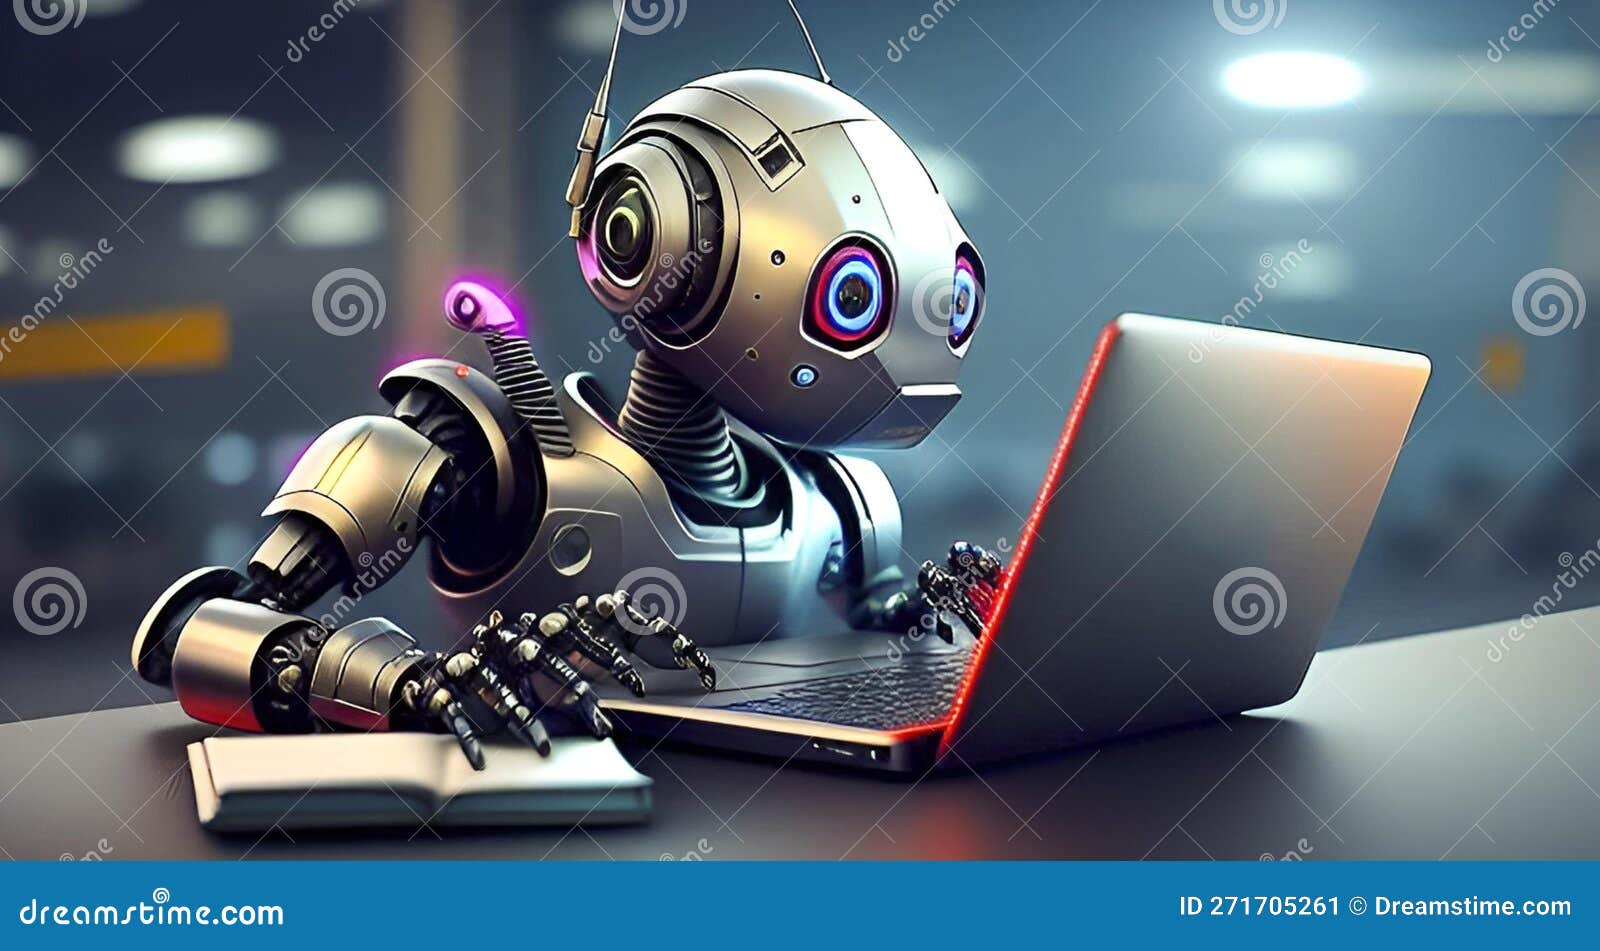 Robô Funciona No Computador. Formação De Robôs E Inteligência Artificial. Robô De Trabalho Na Rede Gerada Ilustração Stock - Ilustração de trabalhos, robô: 271705261